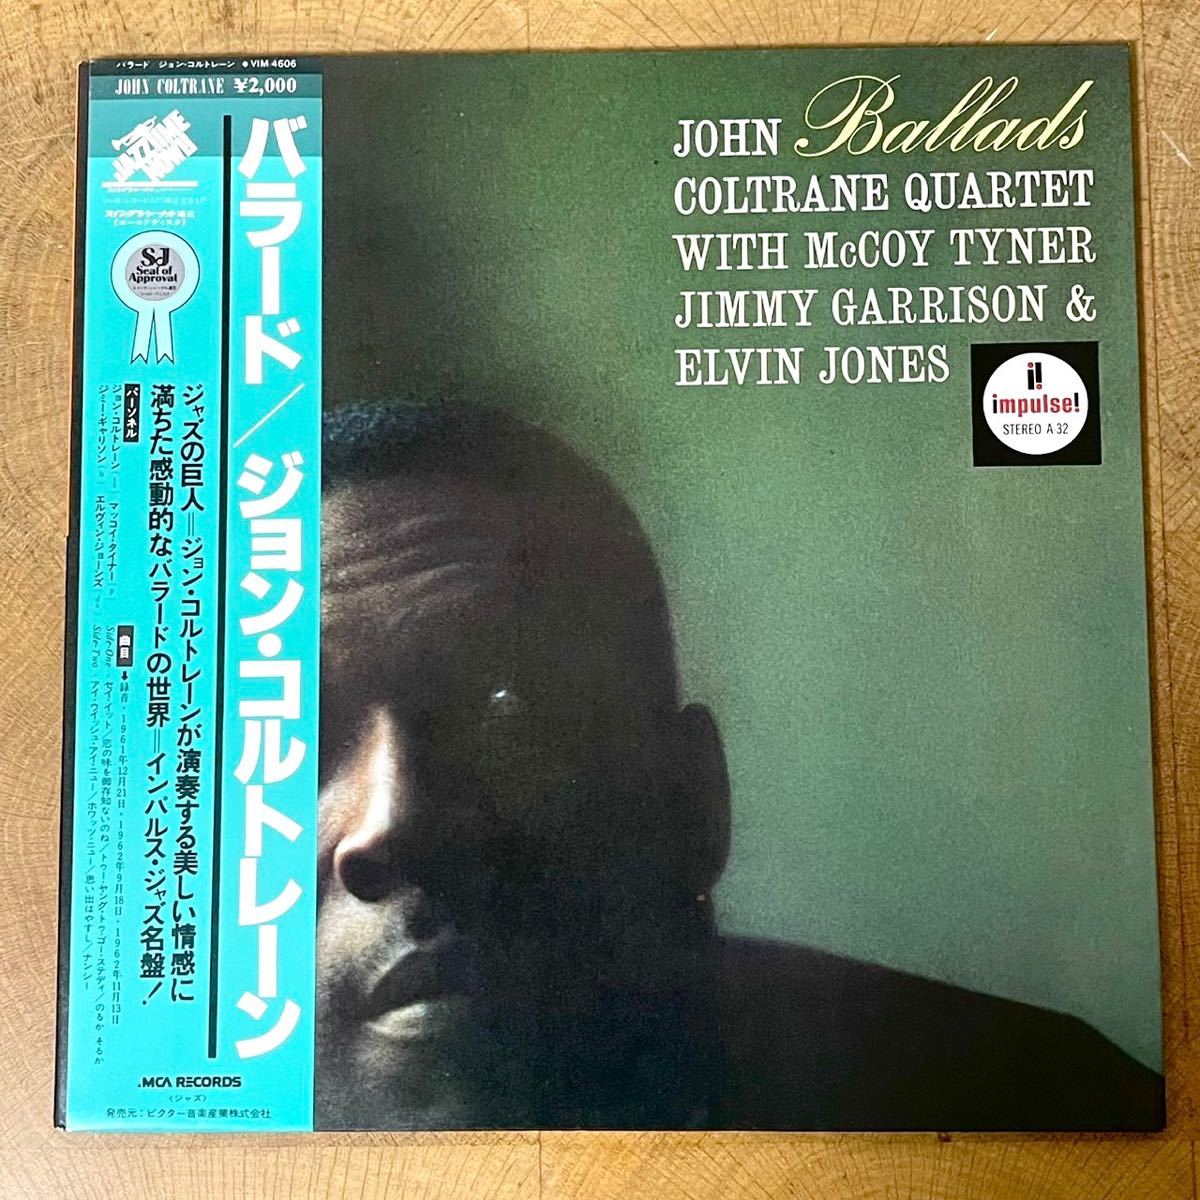 視聴確認済 LP/レコード JAZZ/ジャズ BALLADS/バラード JOHN COLTRANE/ジョン・コルトレーン Impulse! VIM-4606_画像2